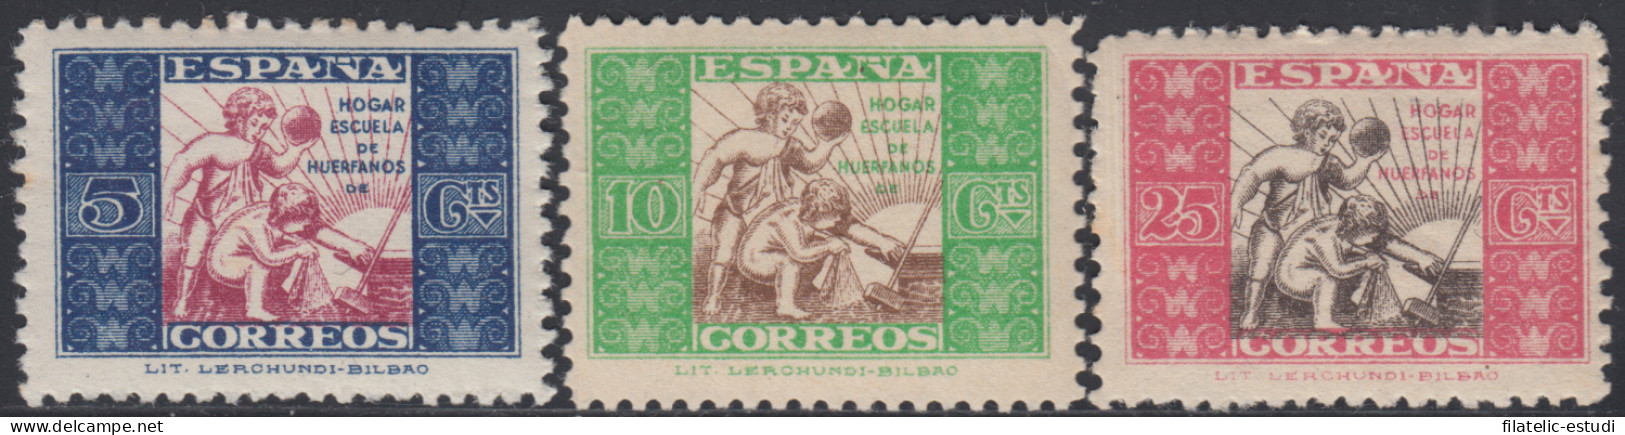 España Spain Beneficencia Huérfanos Correos 9/11 1937 Infancia MH - Charity